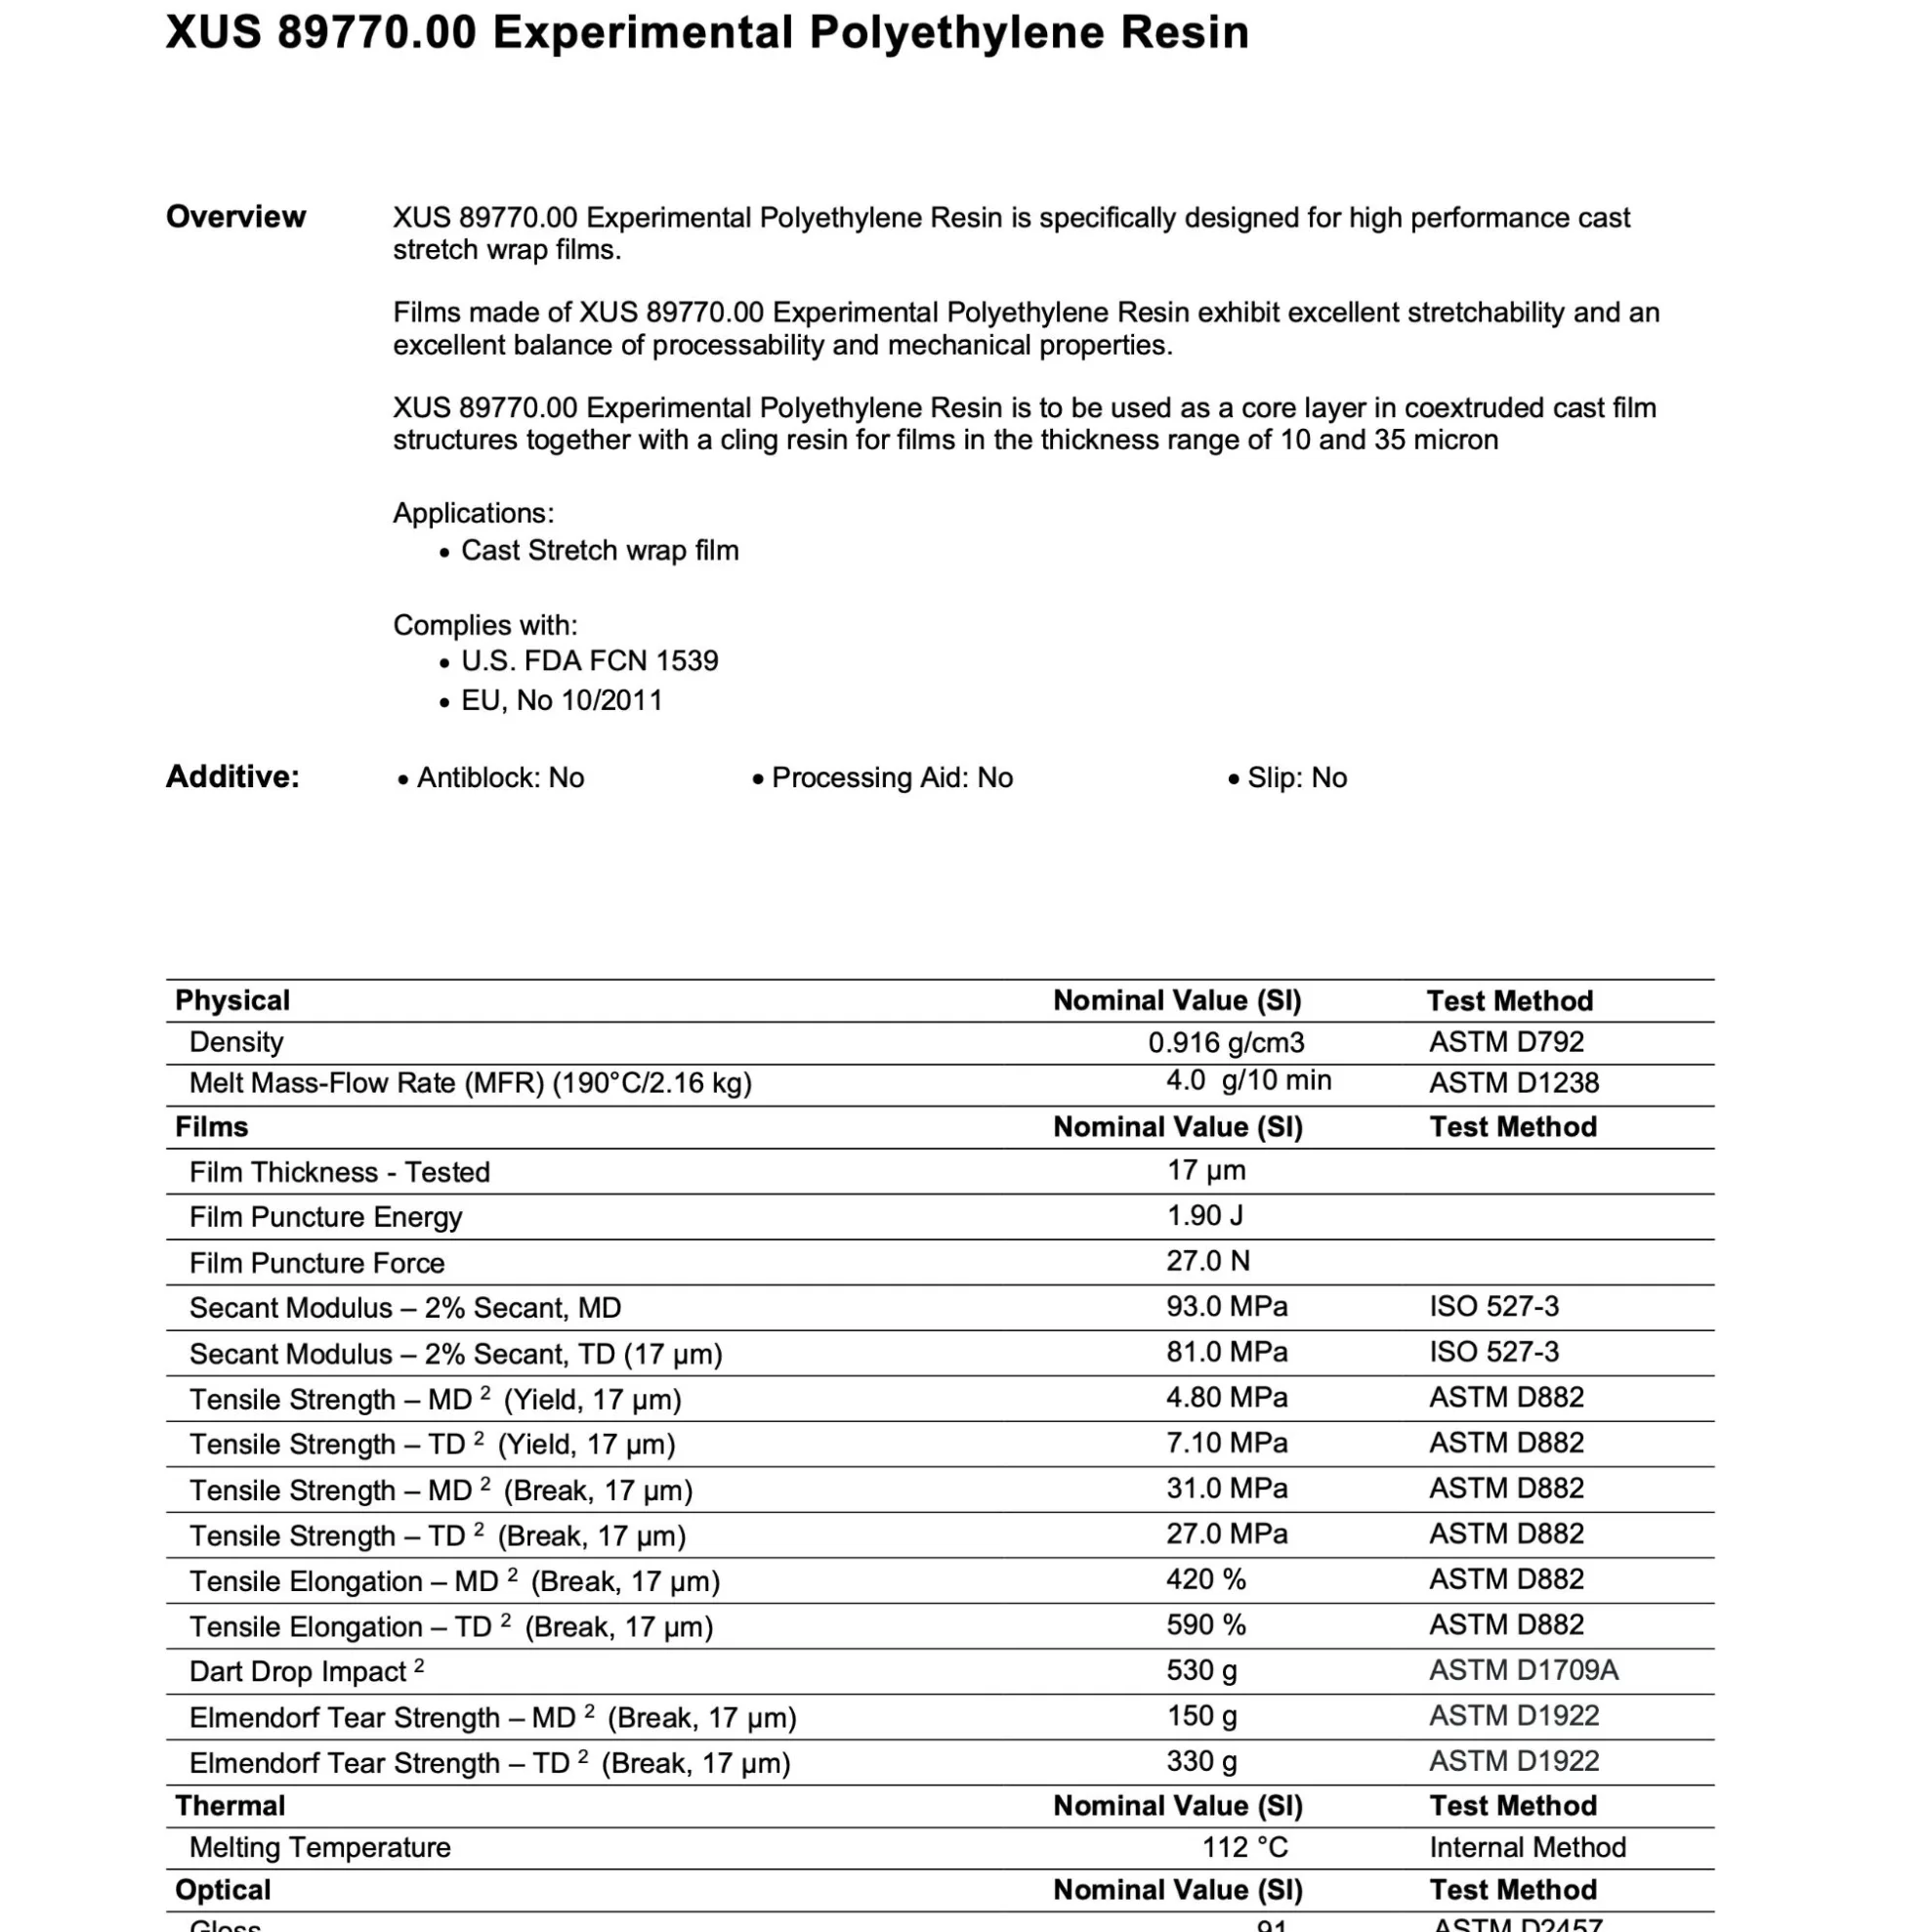 XUS 89770.00 Experimental Polyethylene Resin specs globexvn